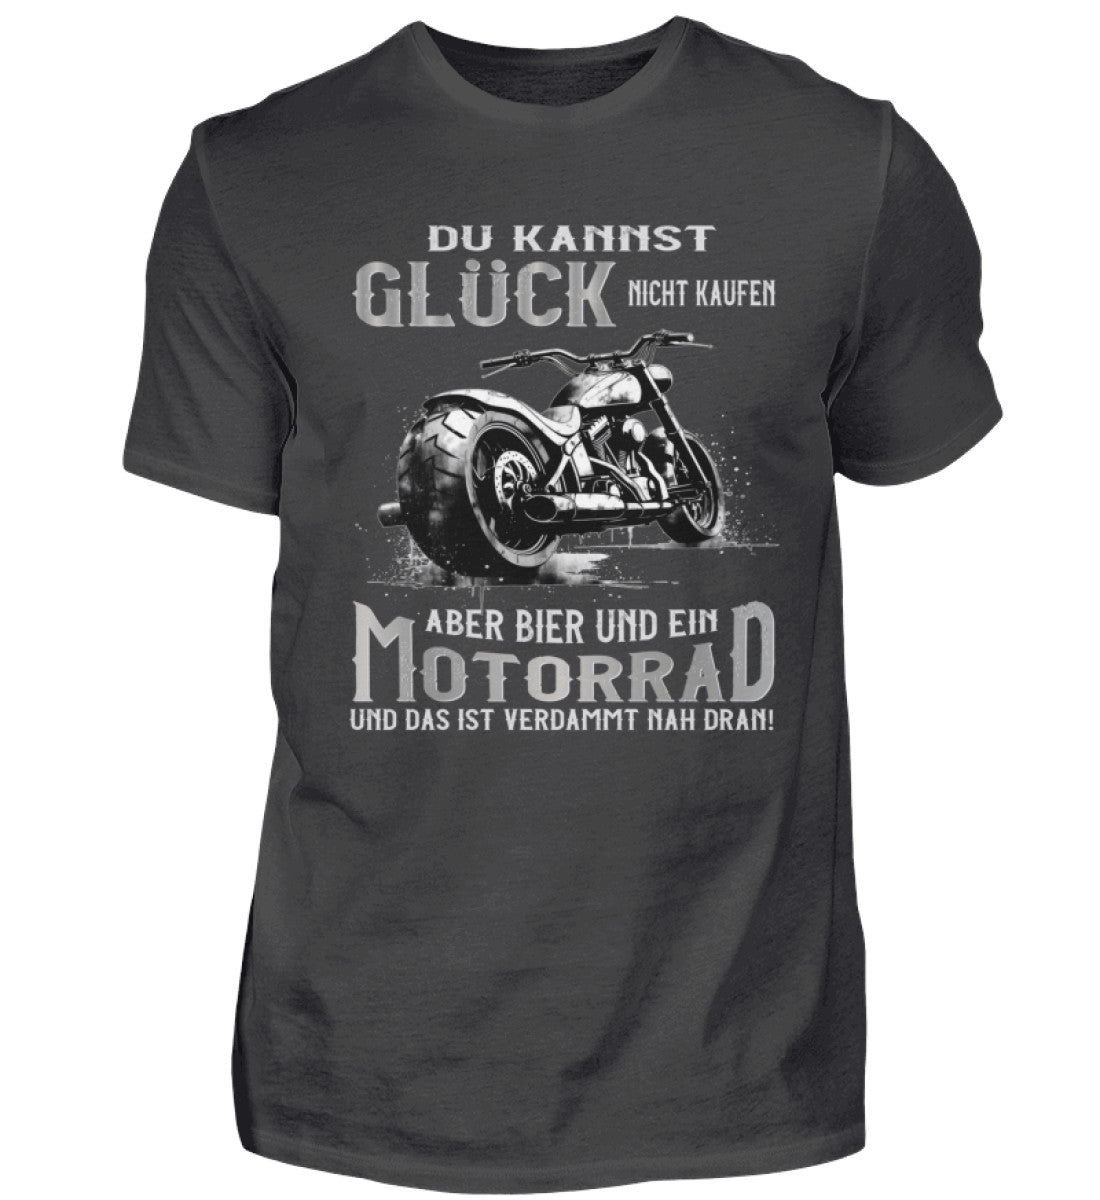 Ein Biker T-Shirt für Motorradfahrer von Wingbikers mit dem Aufdruck, Du kannst Glück nicht kaufen, aber Bier und ein Motorrad und das ist verdammt nah dran! - in dunkelgrau.